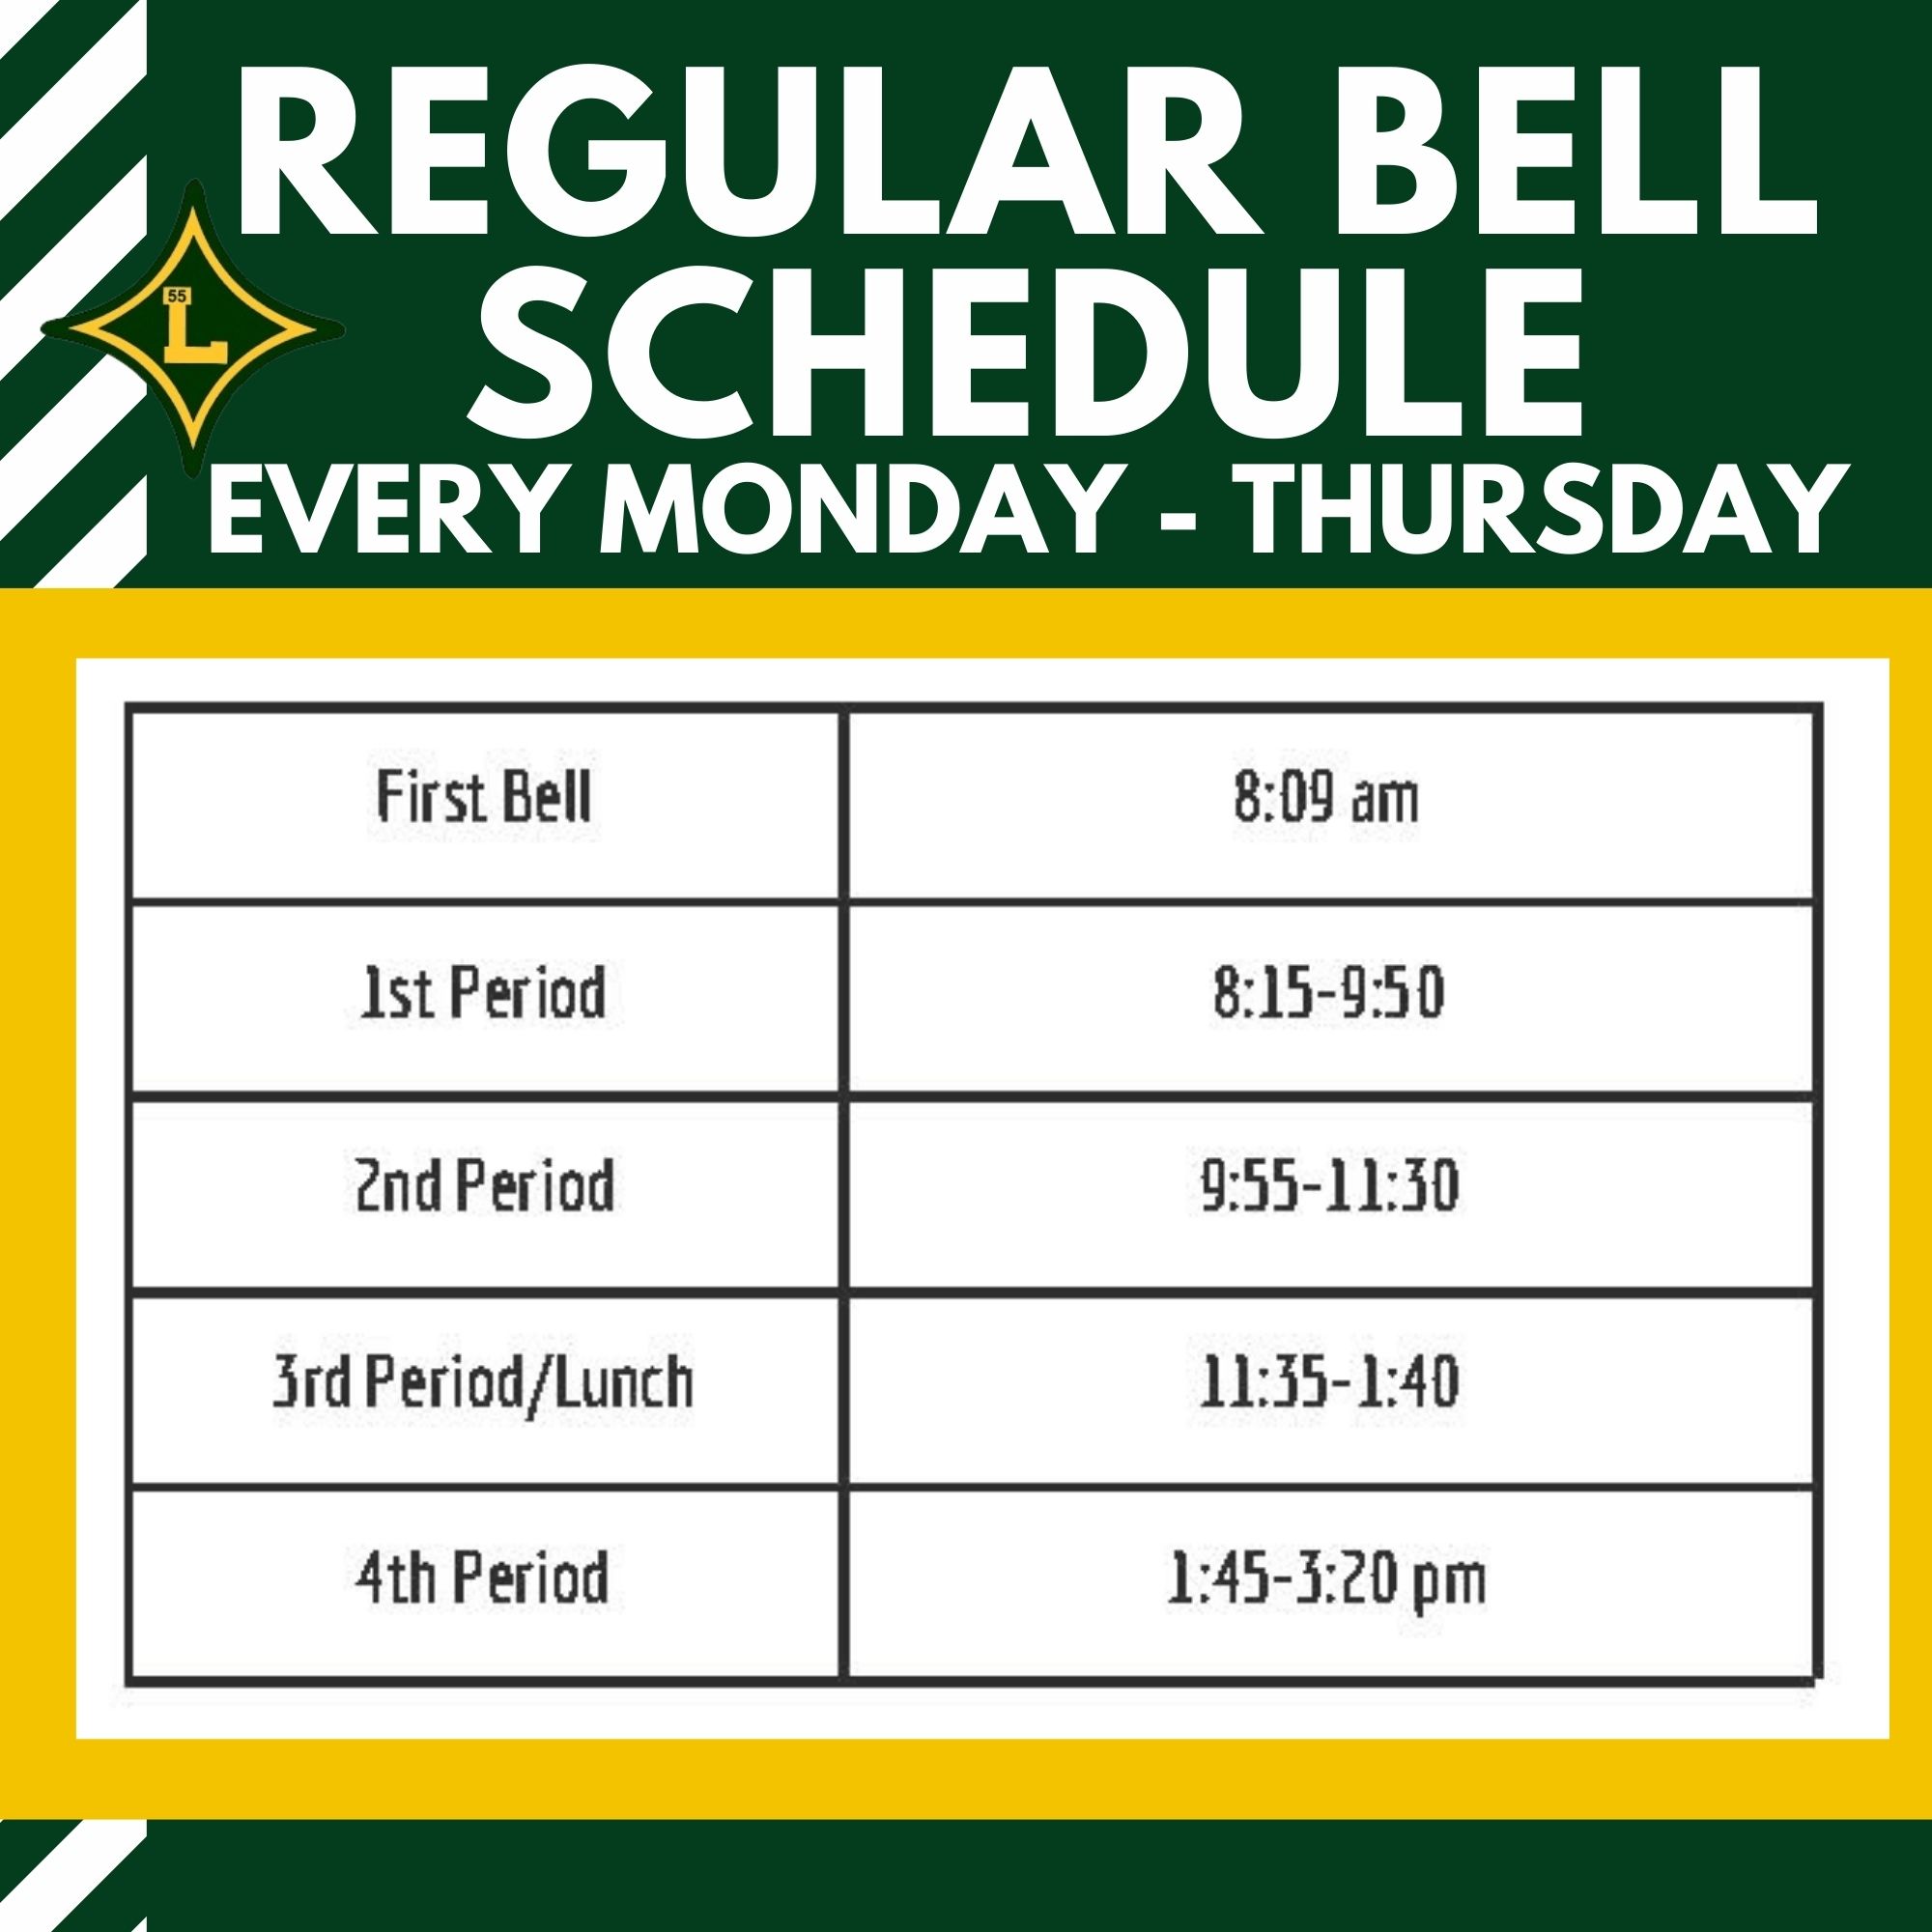 Regular Bell Schedule - Every Monday-Thursday